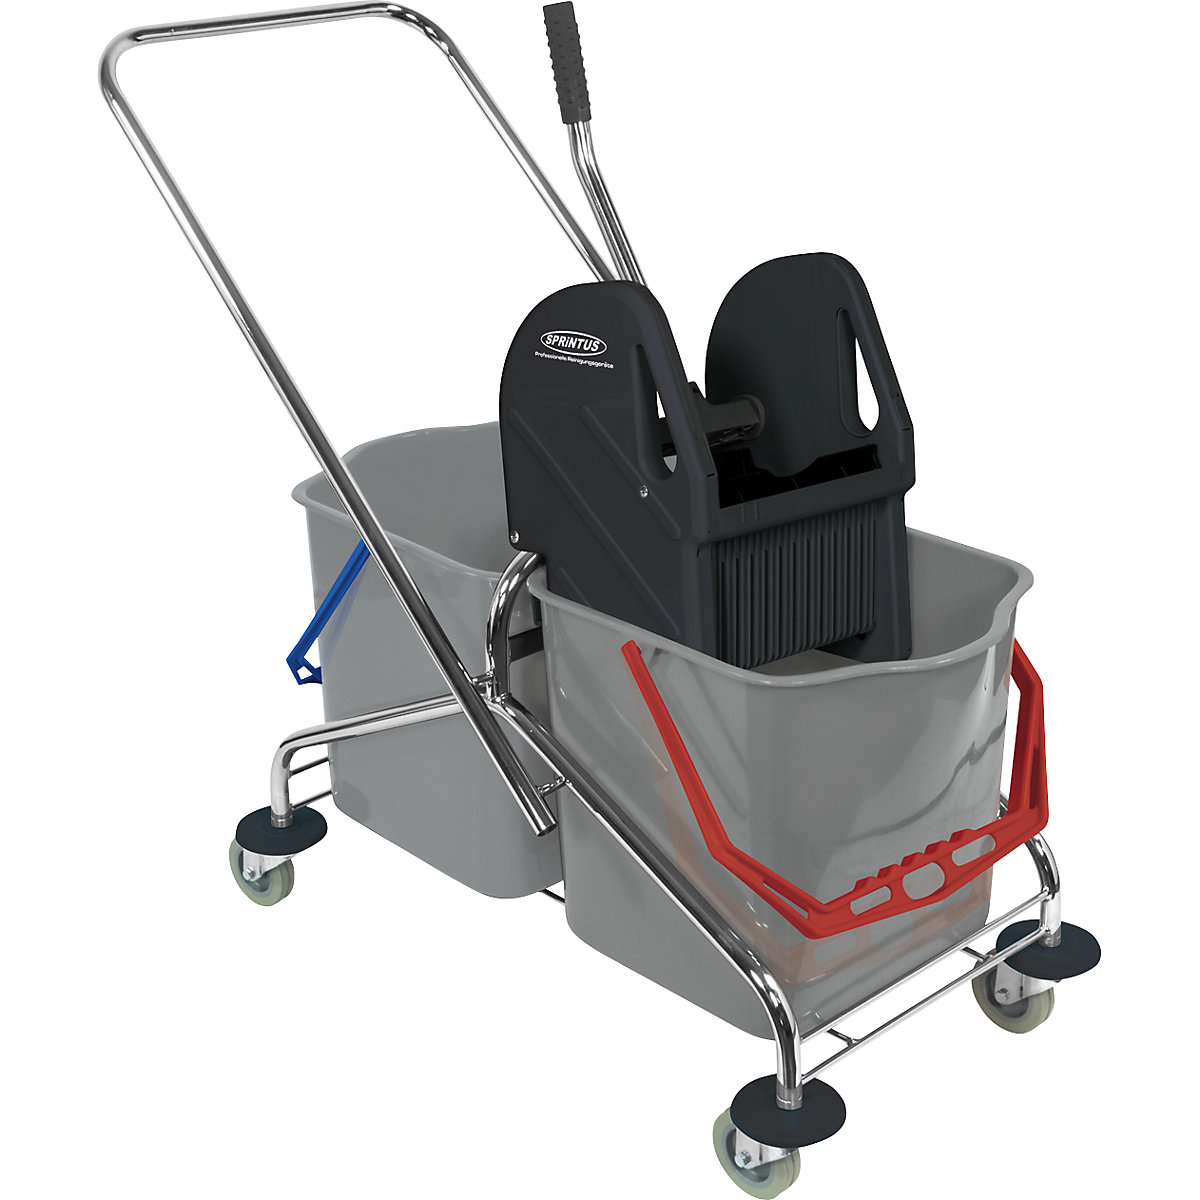 Chariot de nettoyage: chariot de 2 seaux de 27 litres avec barre de poussée